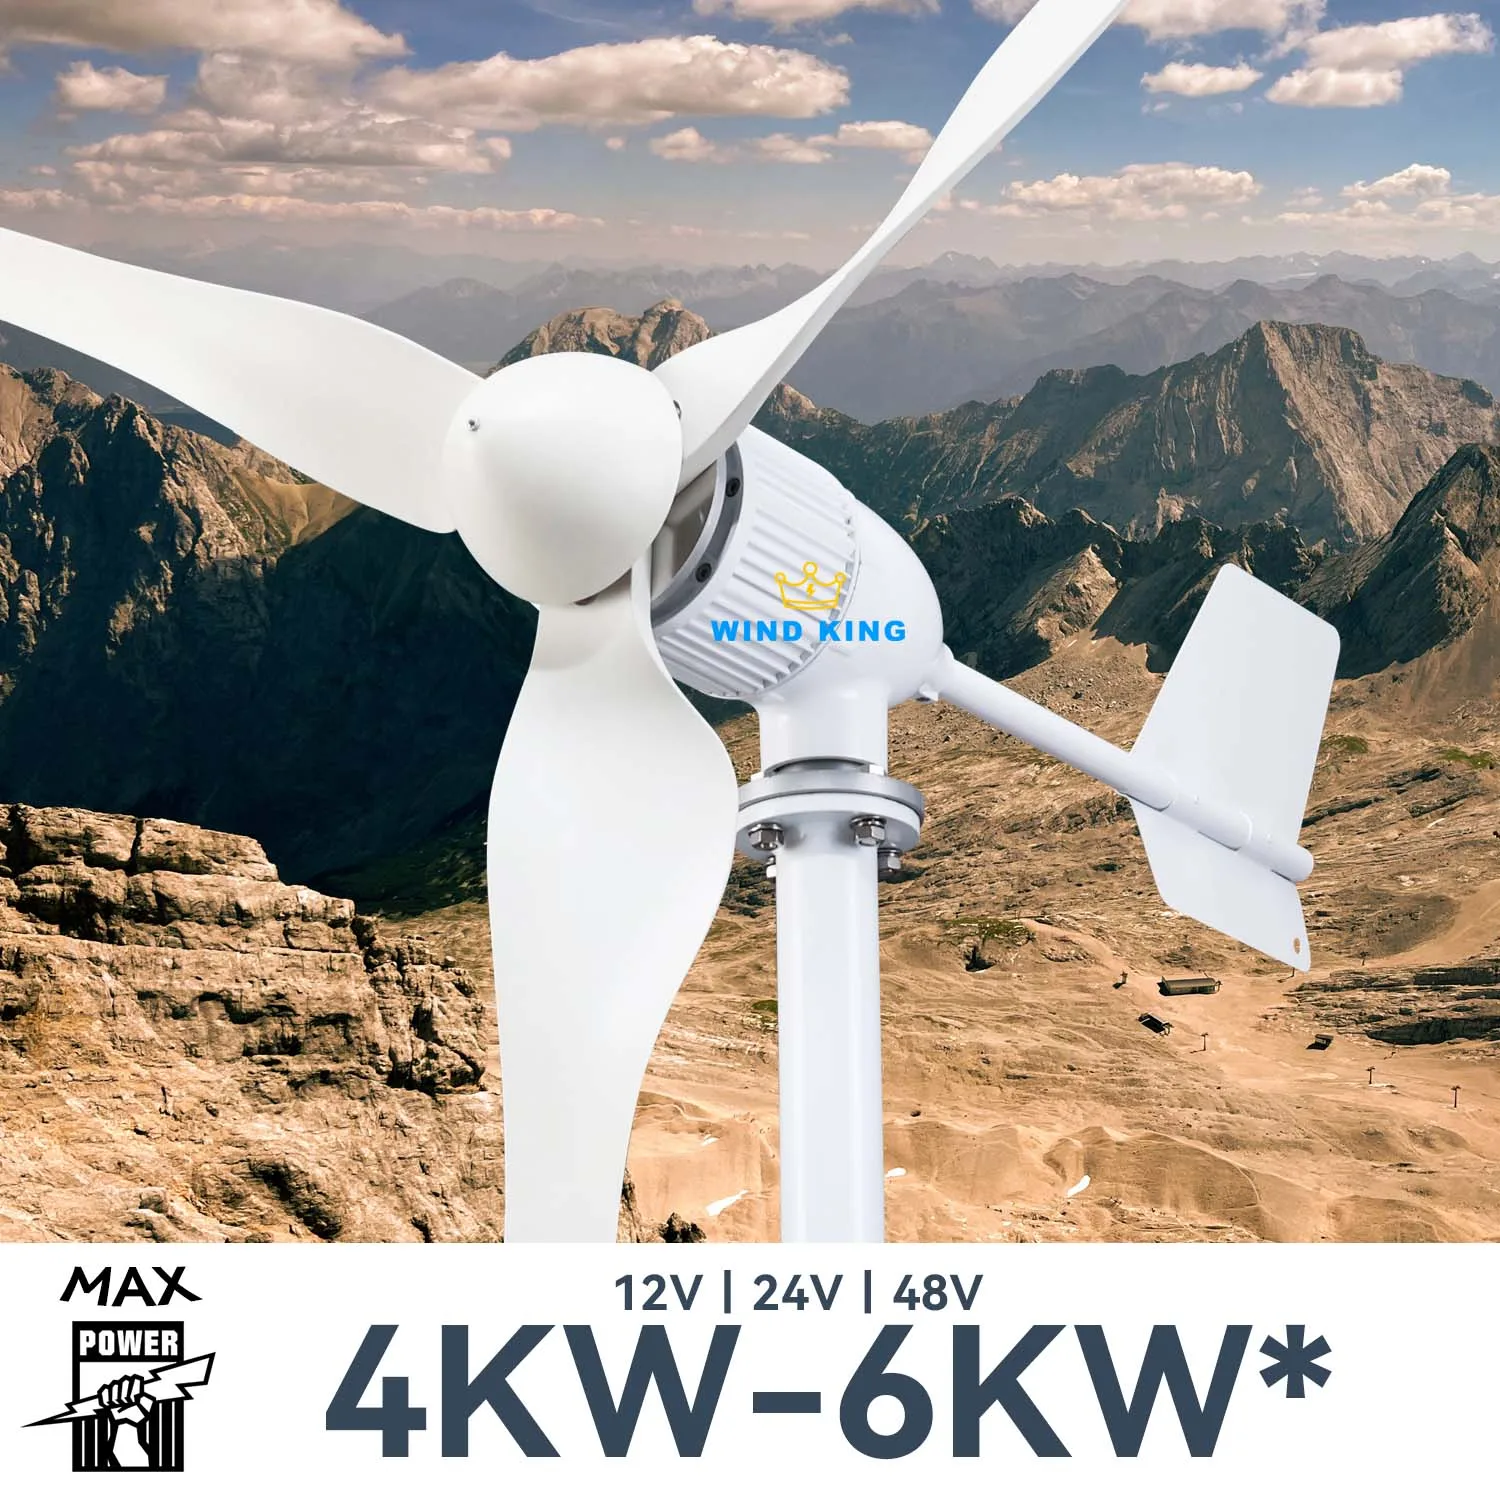 Ветряные Солнечные Гибридные Комплекты WindKing мощностью 4 кВт 6 кВт с 3 Лопастями 12V 24v 48v Высокоэффективной Турбины Выходной Мощности С Гибридной Системой Зарядного Устройства. 0